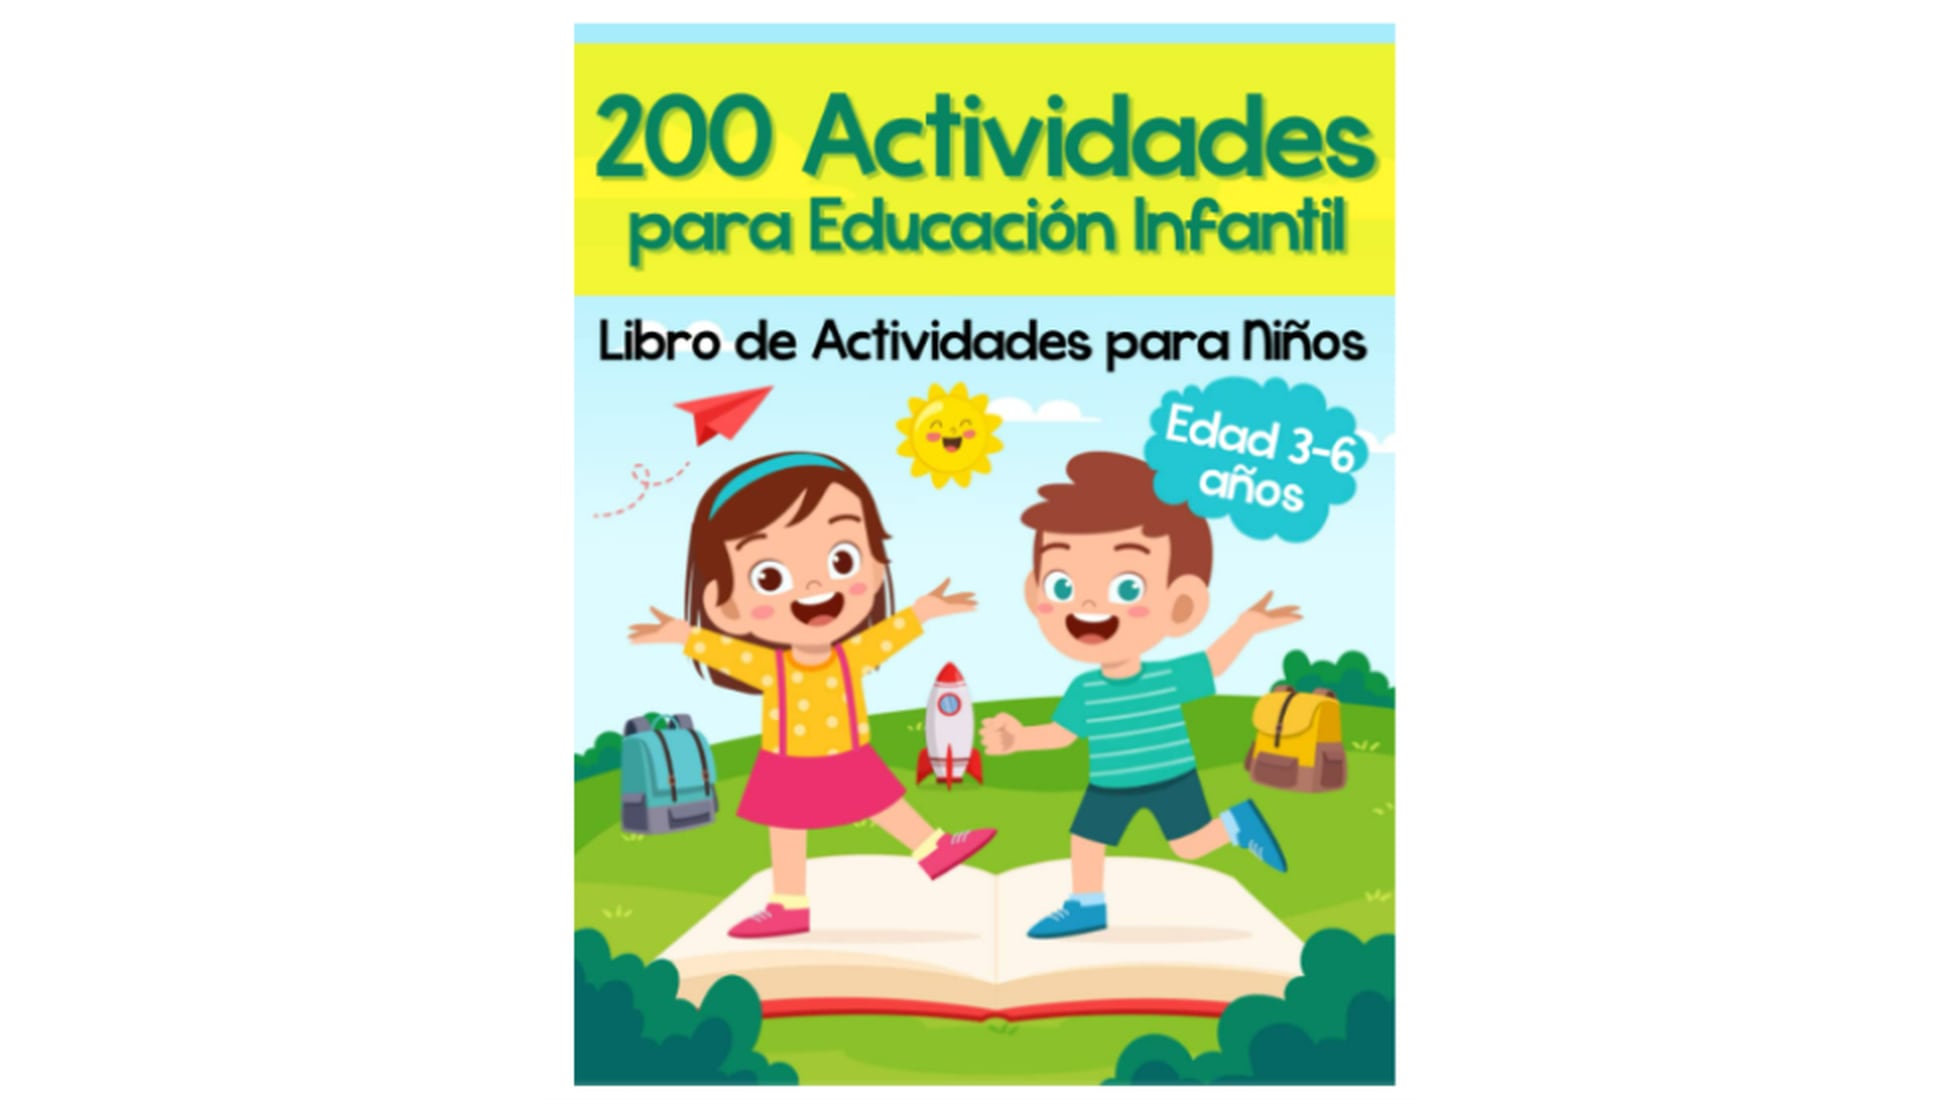 Diversión para aprender de fácil limpieza para niños Almohadillas de aprendizaje libros de actividad de libros educativos 